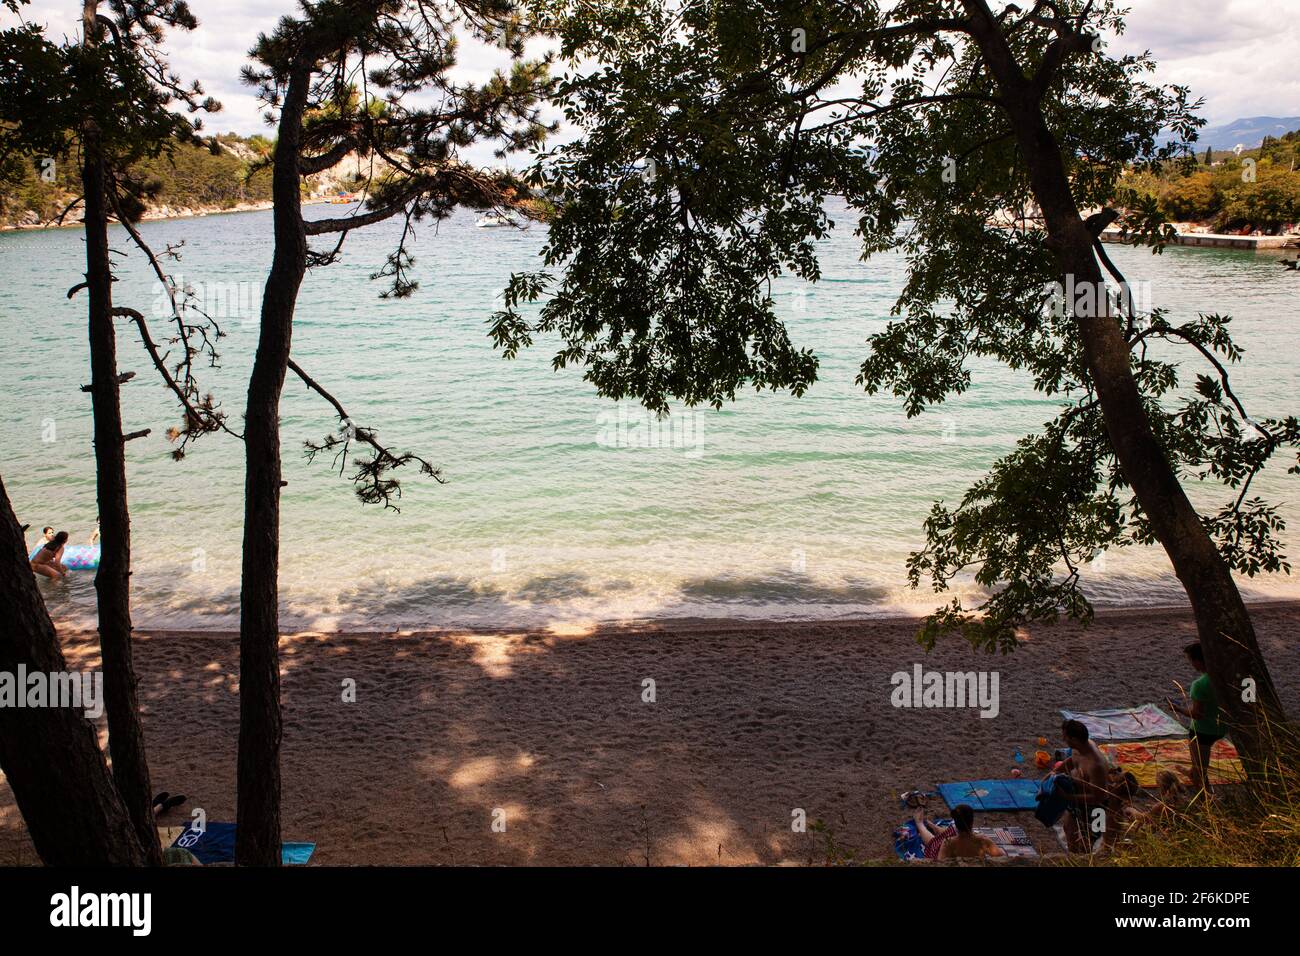 Omišalj, Insel Krk, Kroatien - Juli 18: In der Sommersaison am 18. Juli 2020 werden am Strand von Omišalj Sonnenbänke durchgeführt Stockfoto